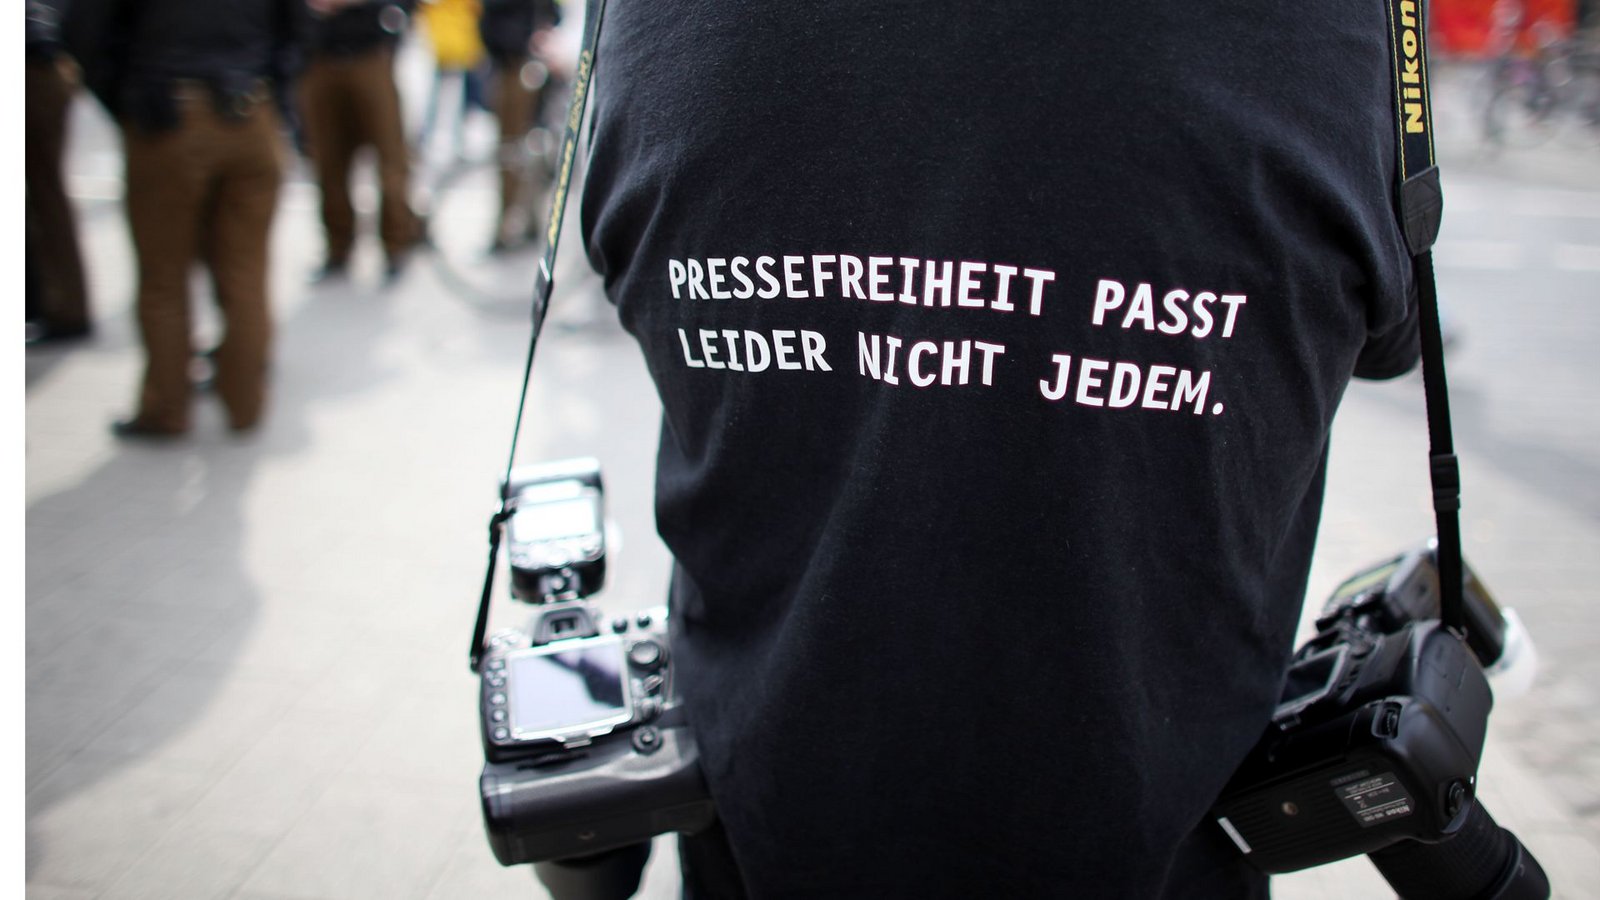 Bekenntnis zur Pressefreiheit auf dem T-Shirt eines Fotografen.Foto: dpa/Oliver Berg